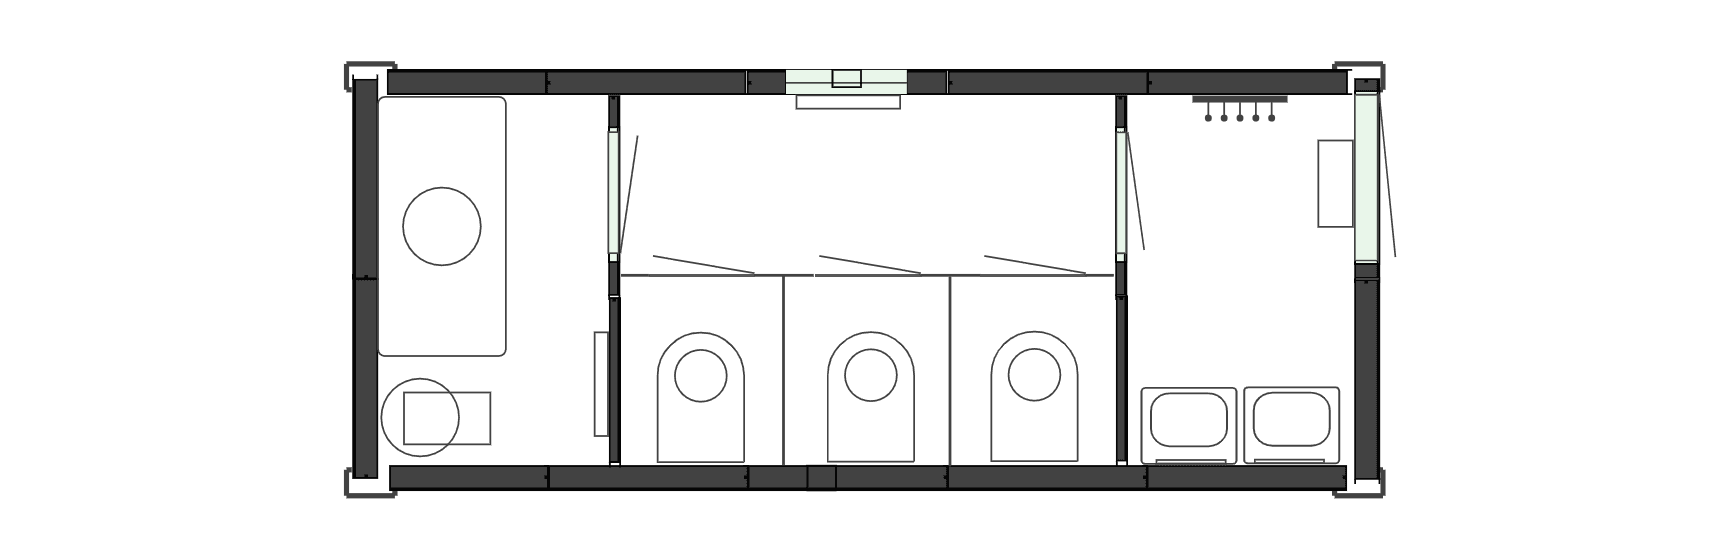 Планировочное решение - Вагон-туалет на 3 кабинки